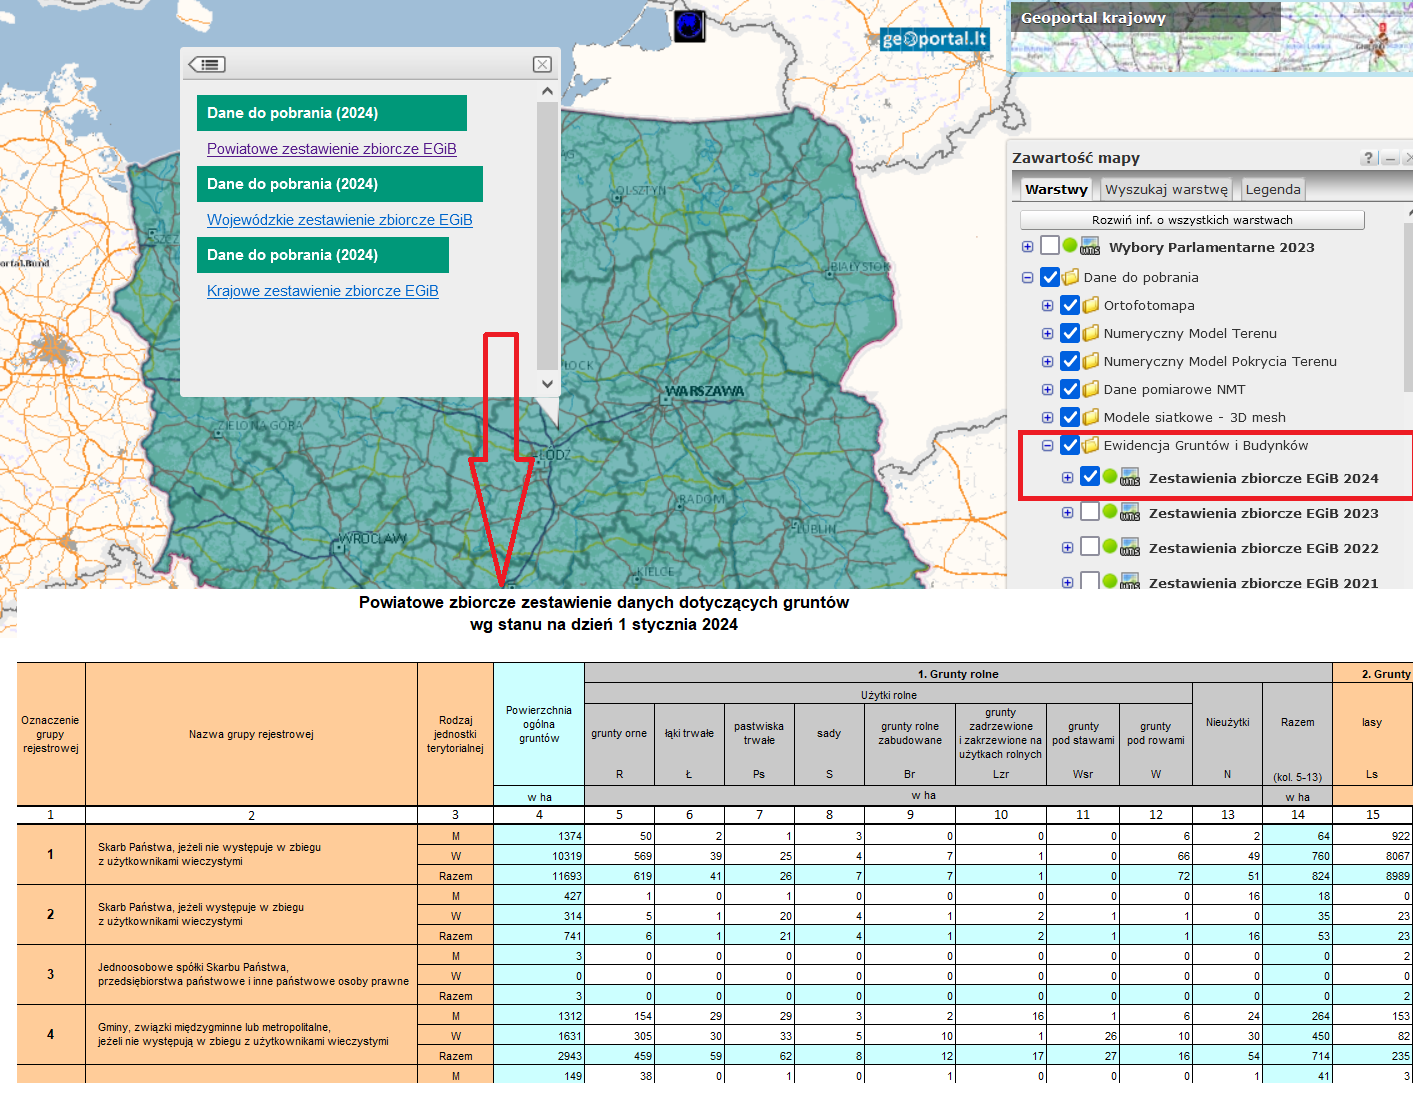 Ilustracja przedstawia zrzut ekranu ze strony www.geoportal.gov.pl z fragmentem powiatowego zestawienia danych dotyczących gruntów według stanu na 1 stycznia 2024 r.